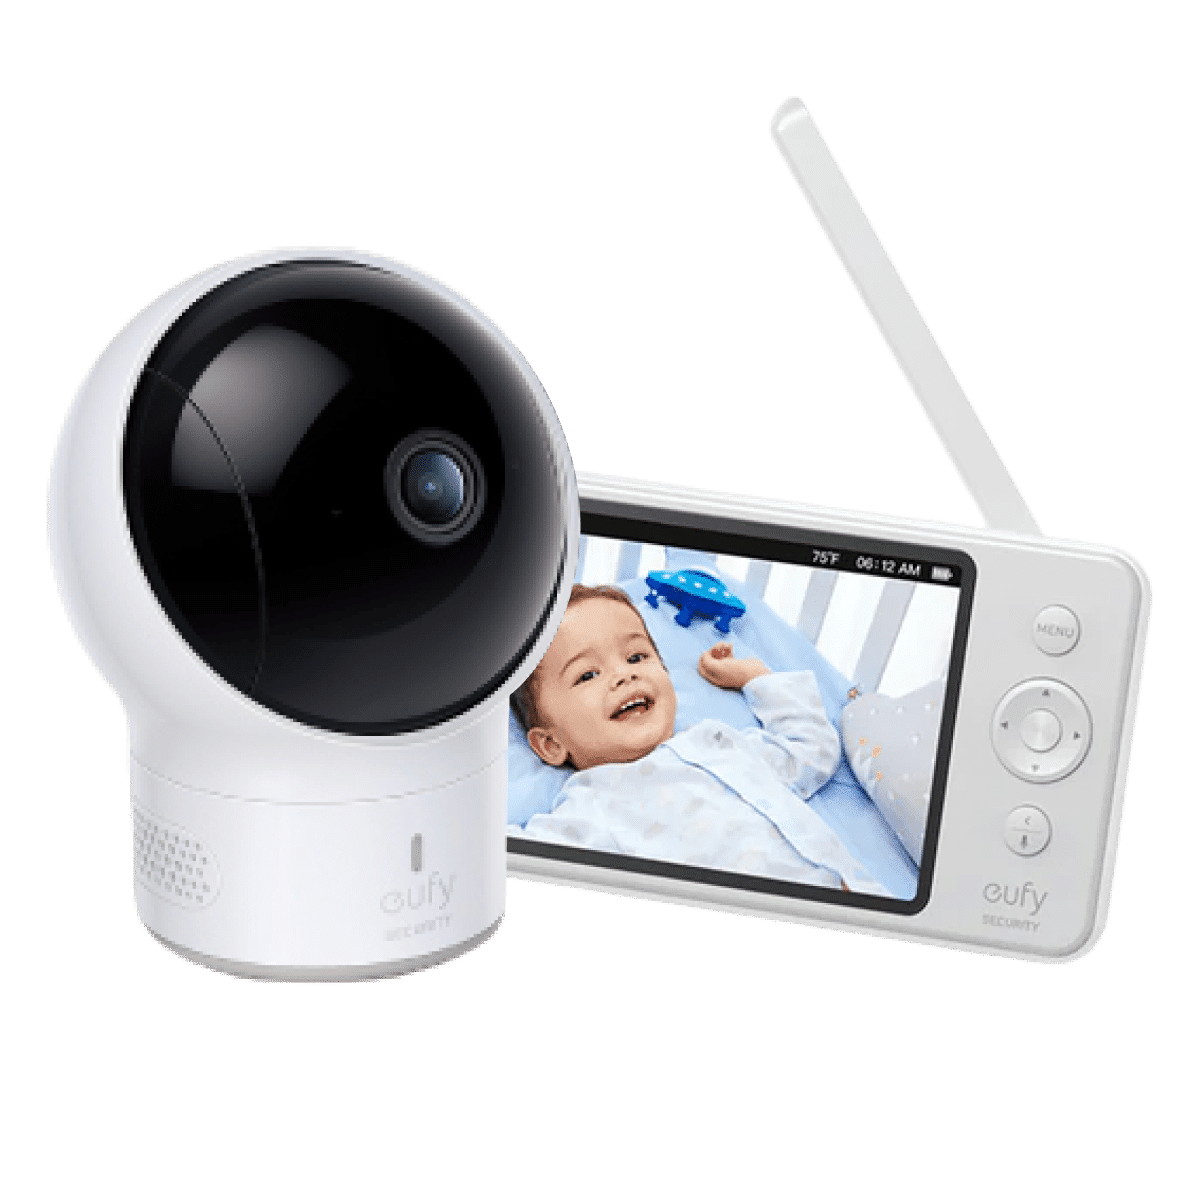 34;Mehr günstig Kaufen-Baby Monitor E110 eine Kamera. Baby Monitor E110 eine Kamera <![CDATA[MEHR SEHEN: Der erweiterte 5-Zoll-Display mit starker 720p-Auflösung ist 10x detailgetreuer und präziser als übliche 240p-Babyphones.   WEITWINKELOBJEKTIV: Keine zusätzlichen Objekt